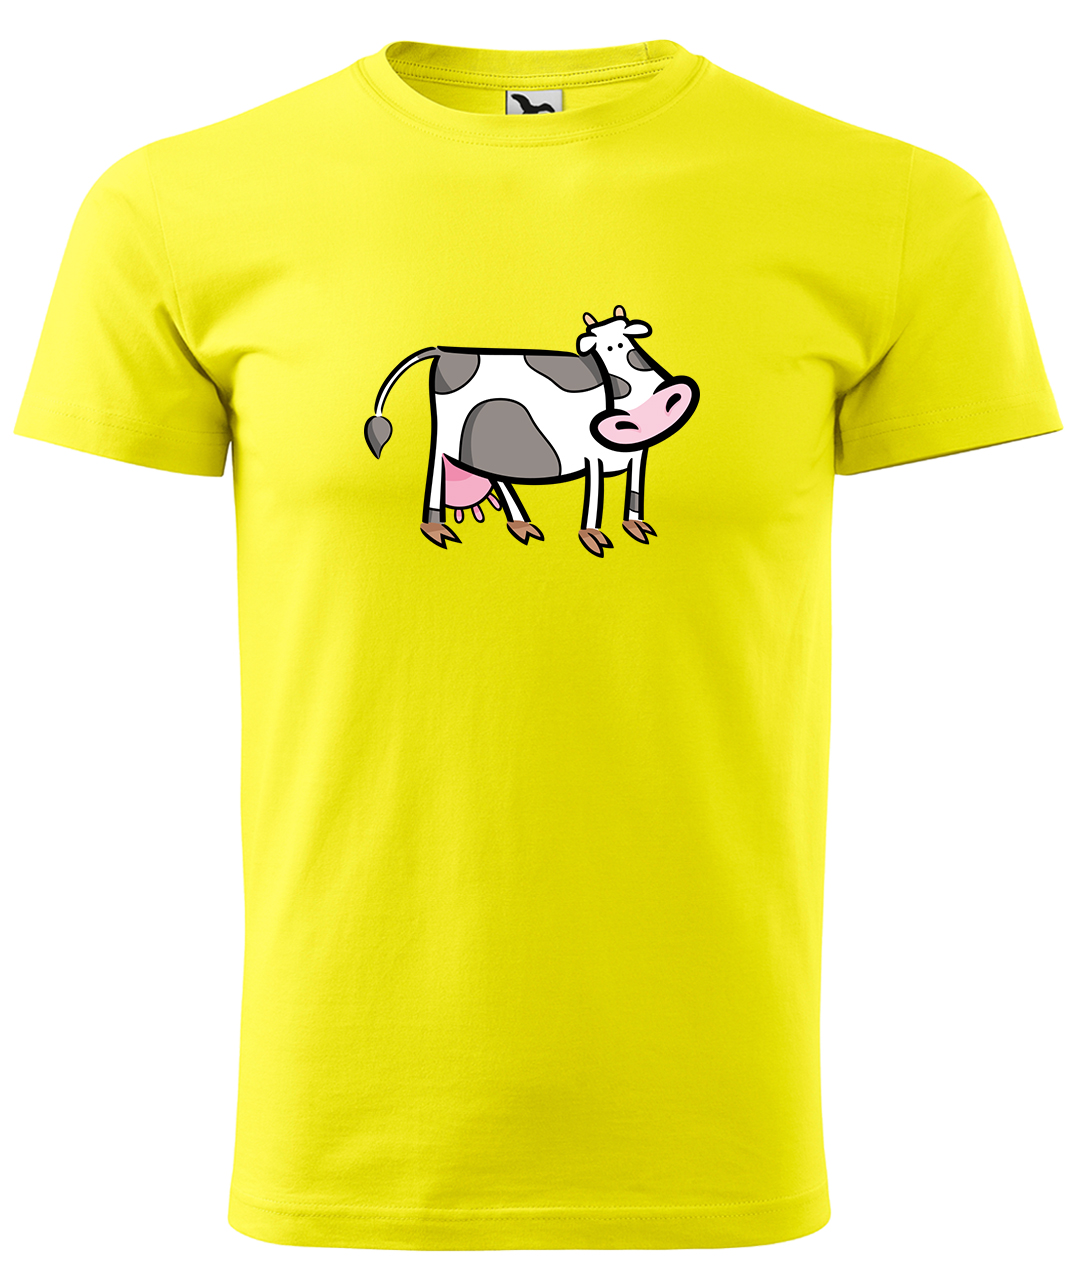 Dětské tričko s krávou - Kravička Velikost: 4 roky / 110 cm, Barva: Žlutá (04), Délka rukávu: Krátký rukáv